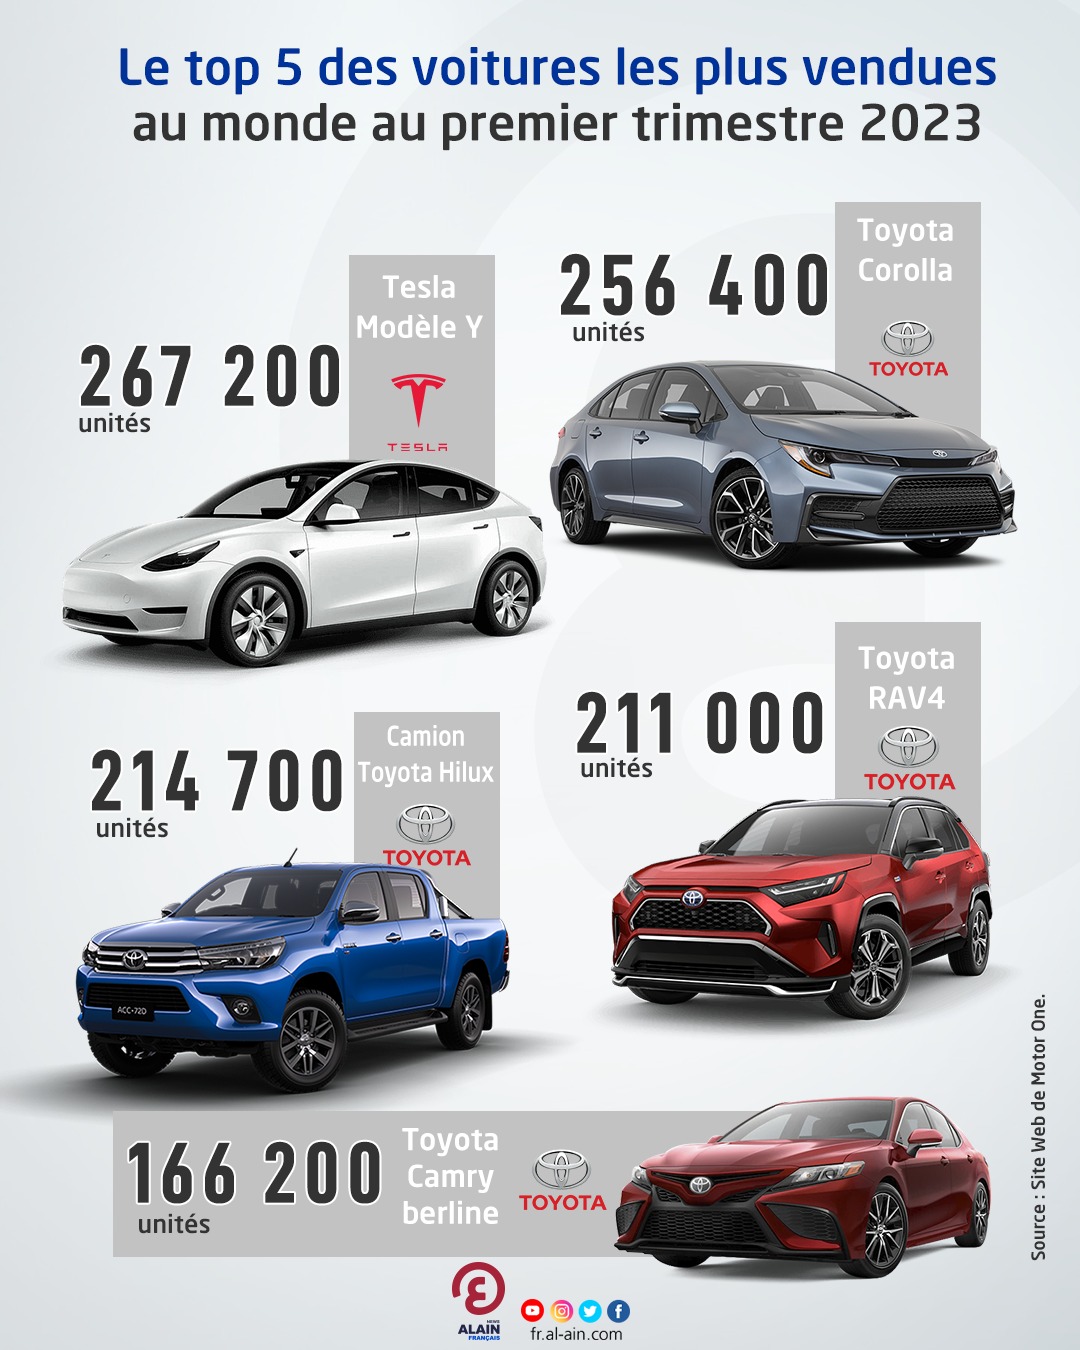 Top 5 des voitures les plus vendues au monde au premier trimestre 2023